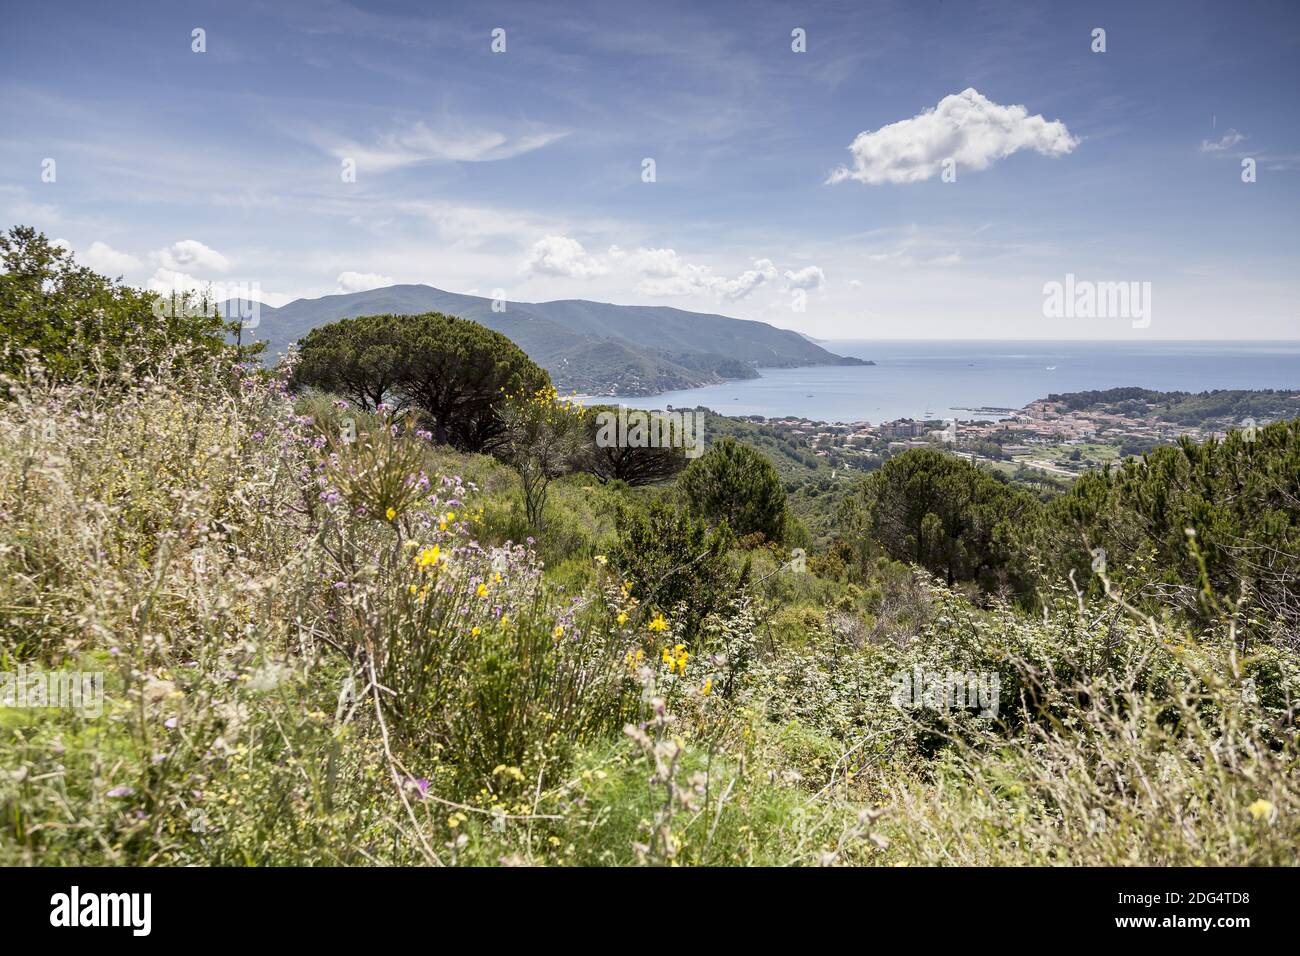 Marina di Campo, view from San Piero, Elba, Italy Stock Photo